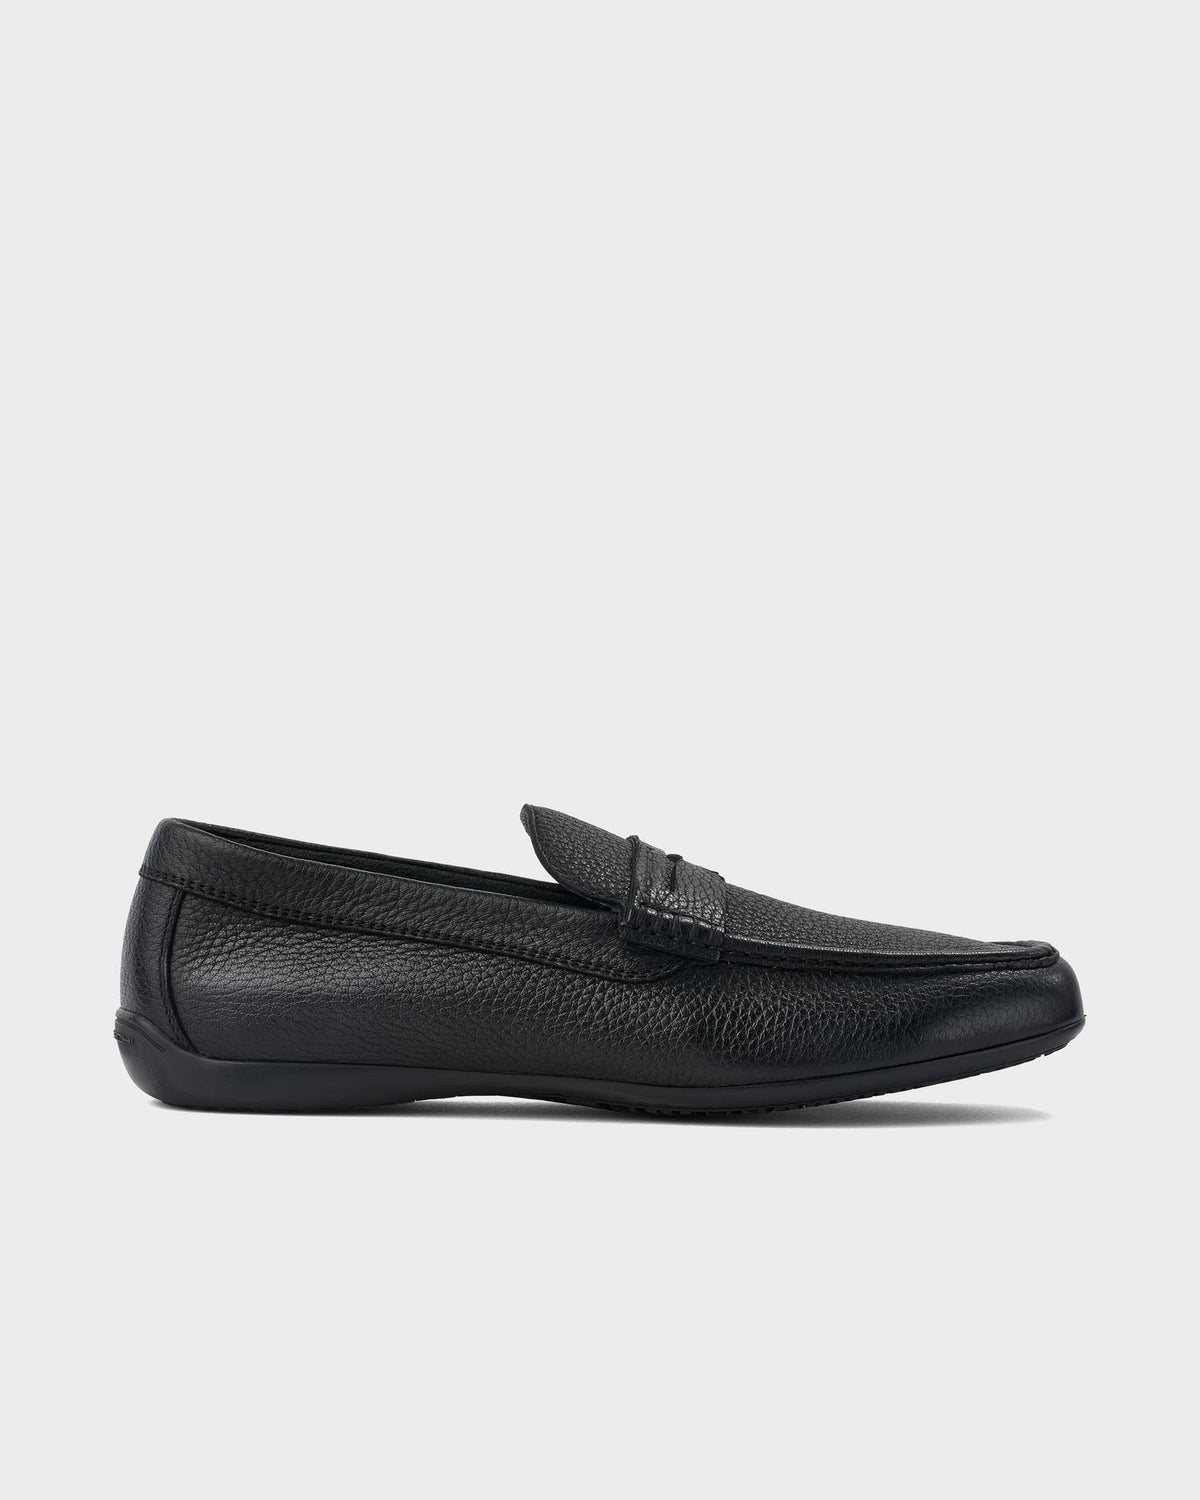 Moreschi Black Minorca Pebbled Leather Loafer– Parker & Co.